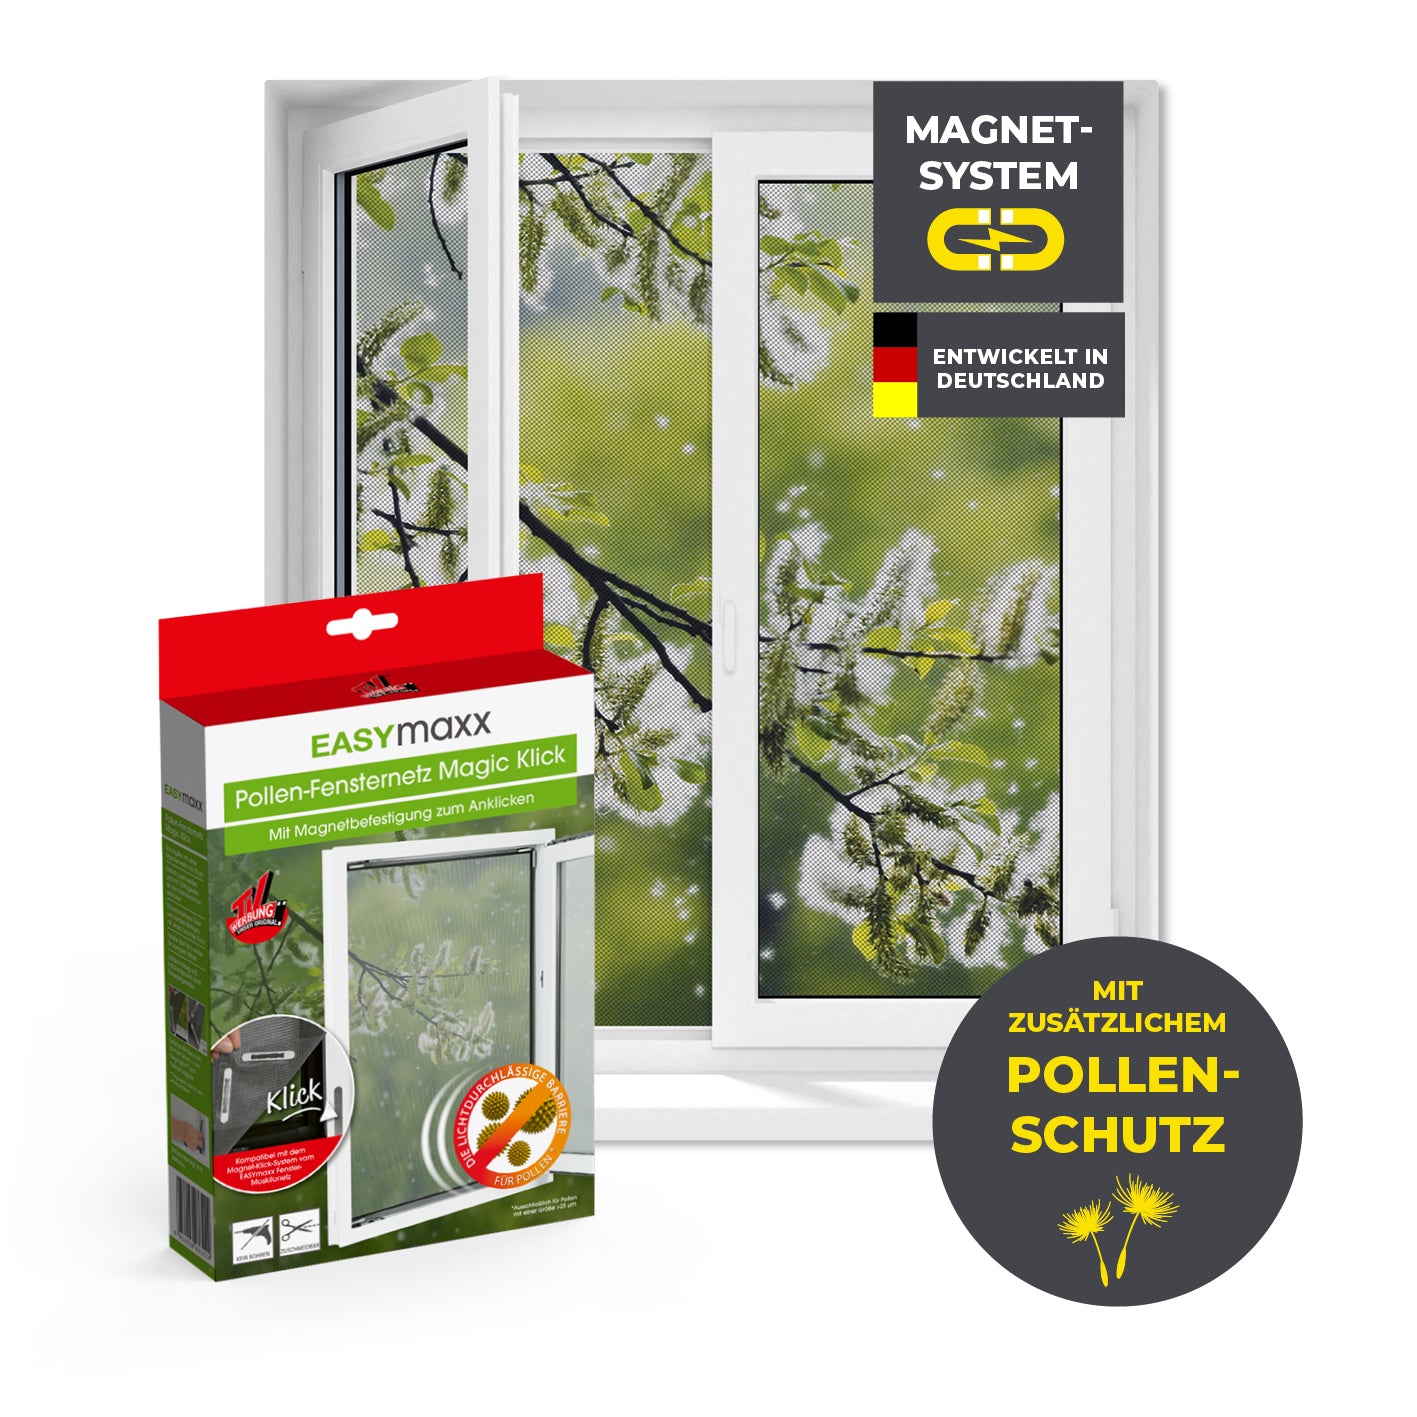 Insekten- & Pollenschutzgitter mit Magnetbefestigung für Fenster bis zu 130 x 150 cm